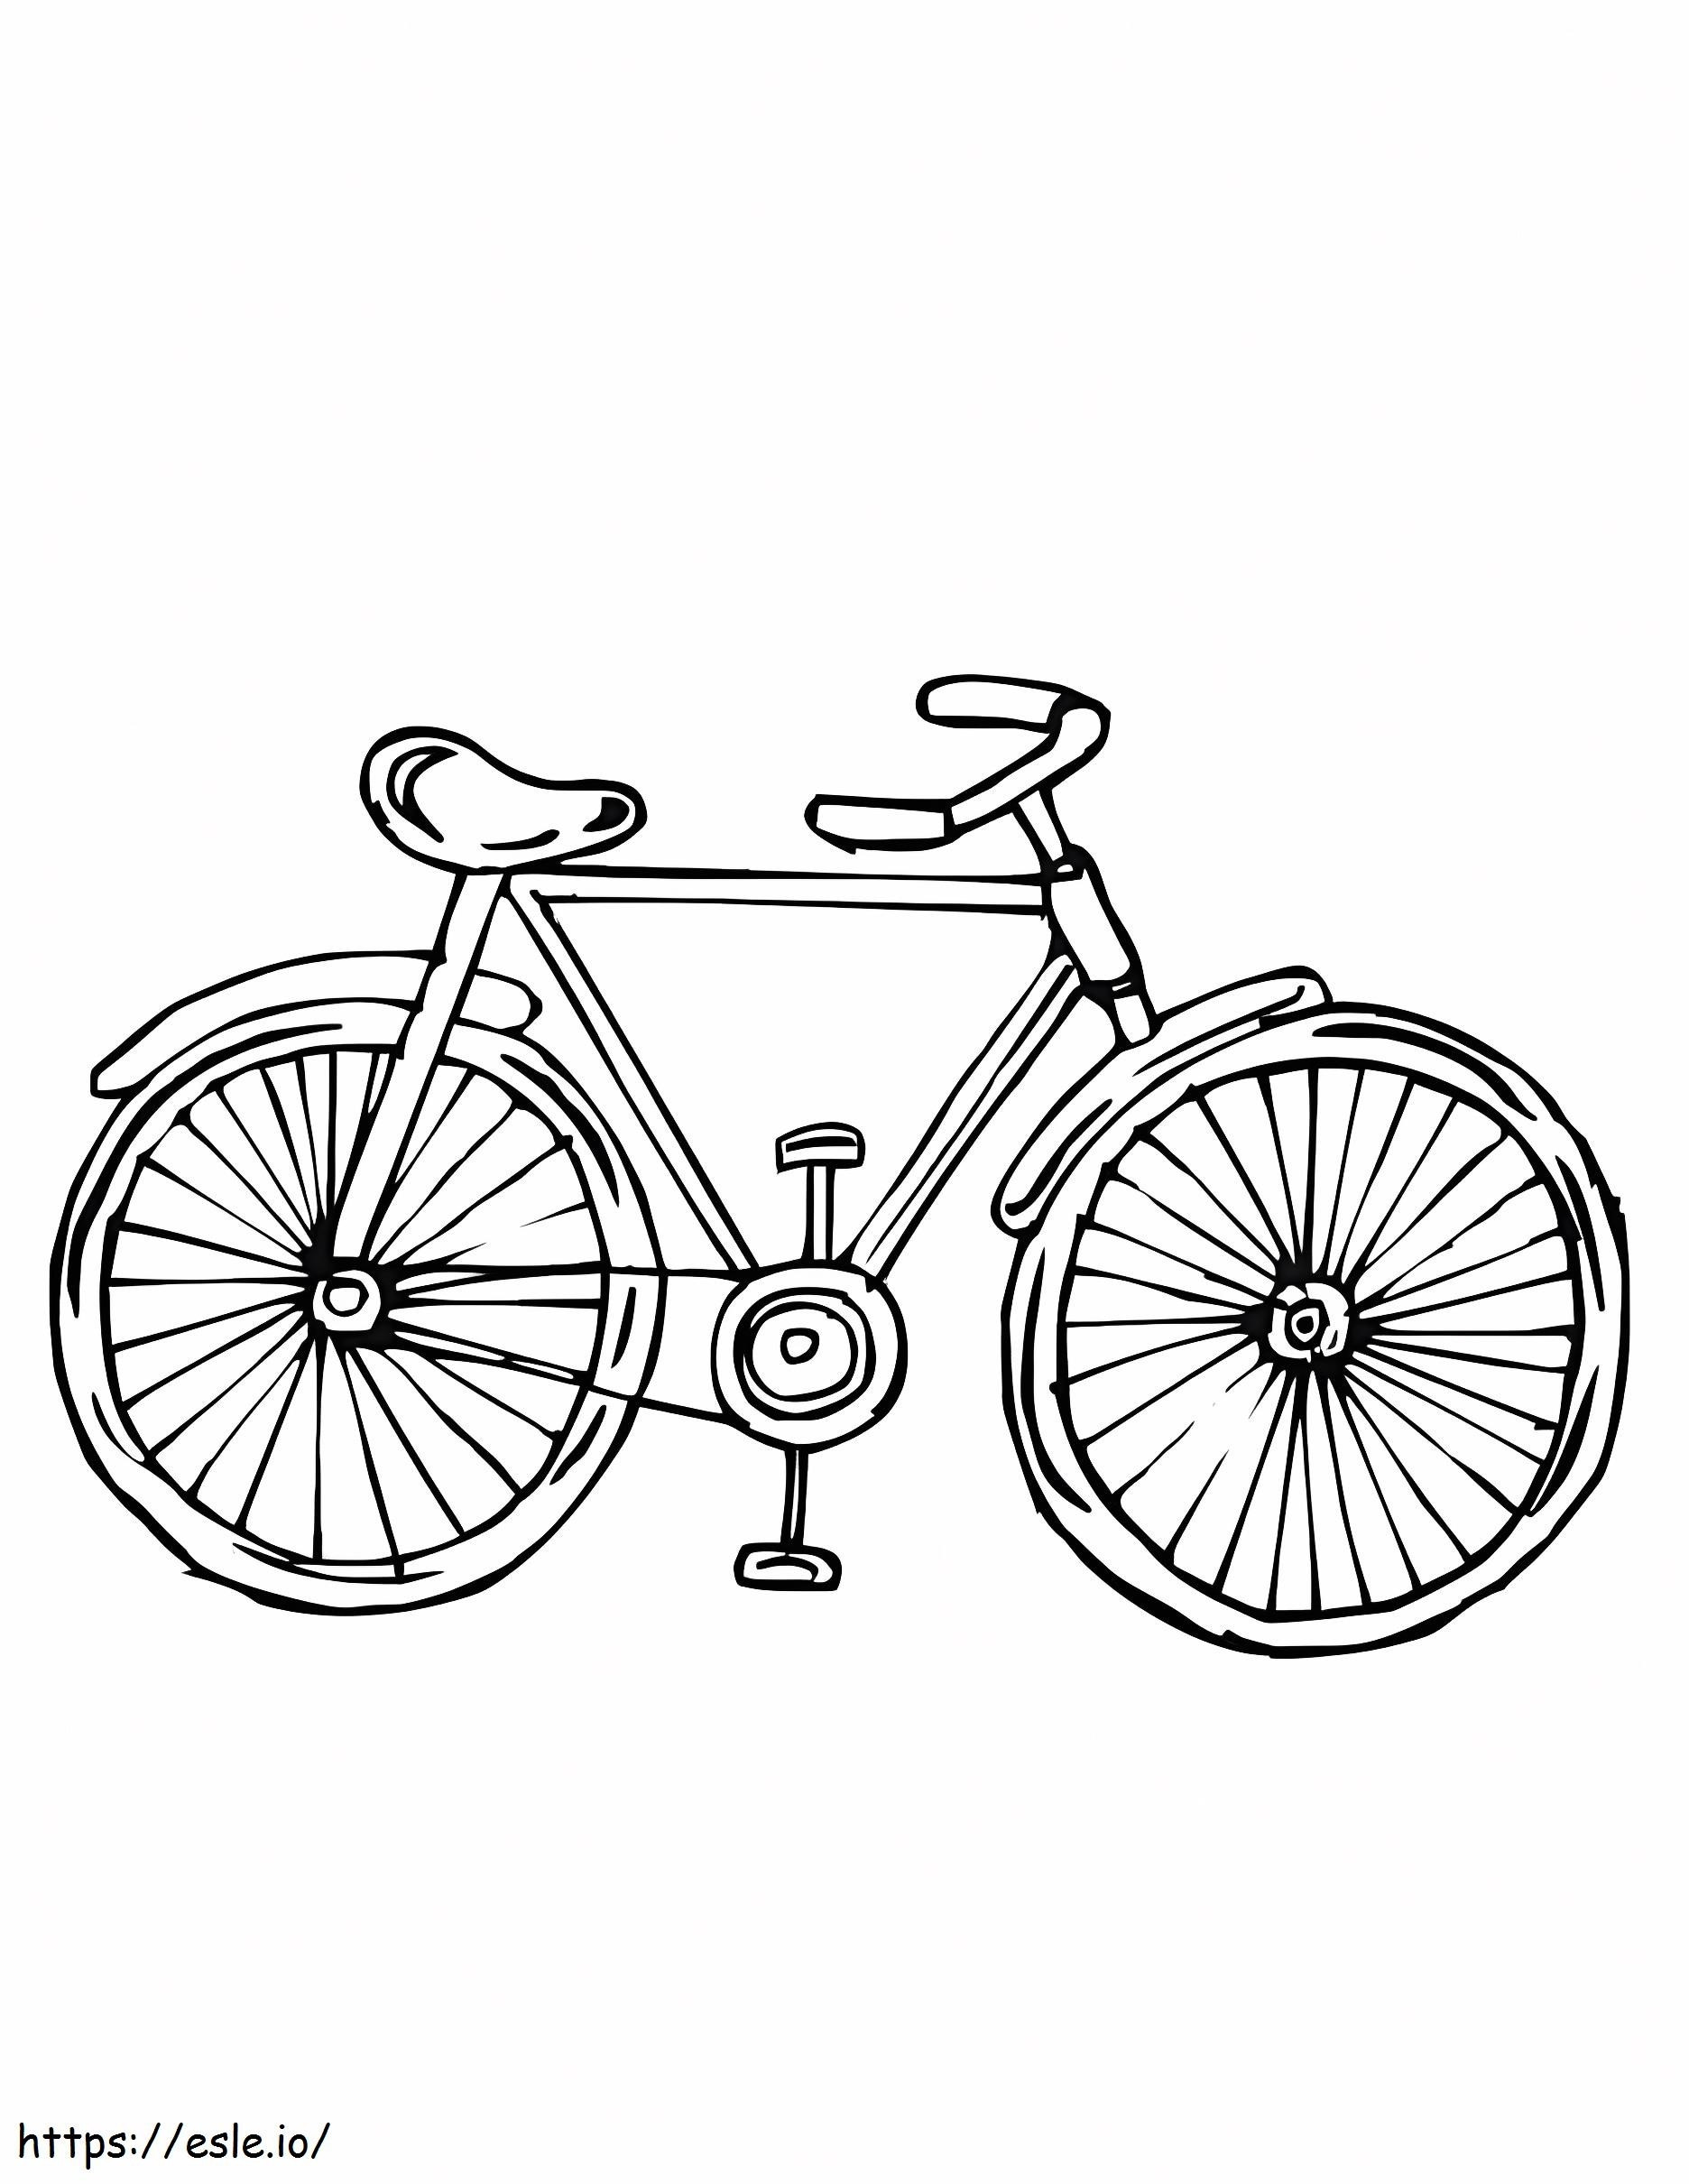 Bisikletin Parçalarını Etiketleyin boyama